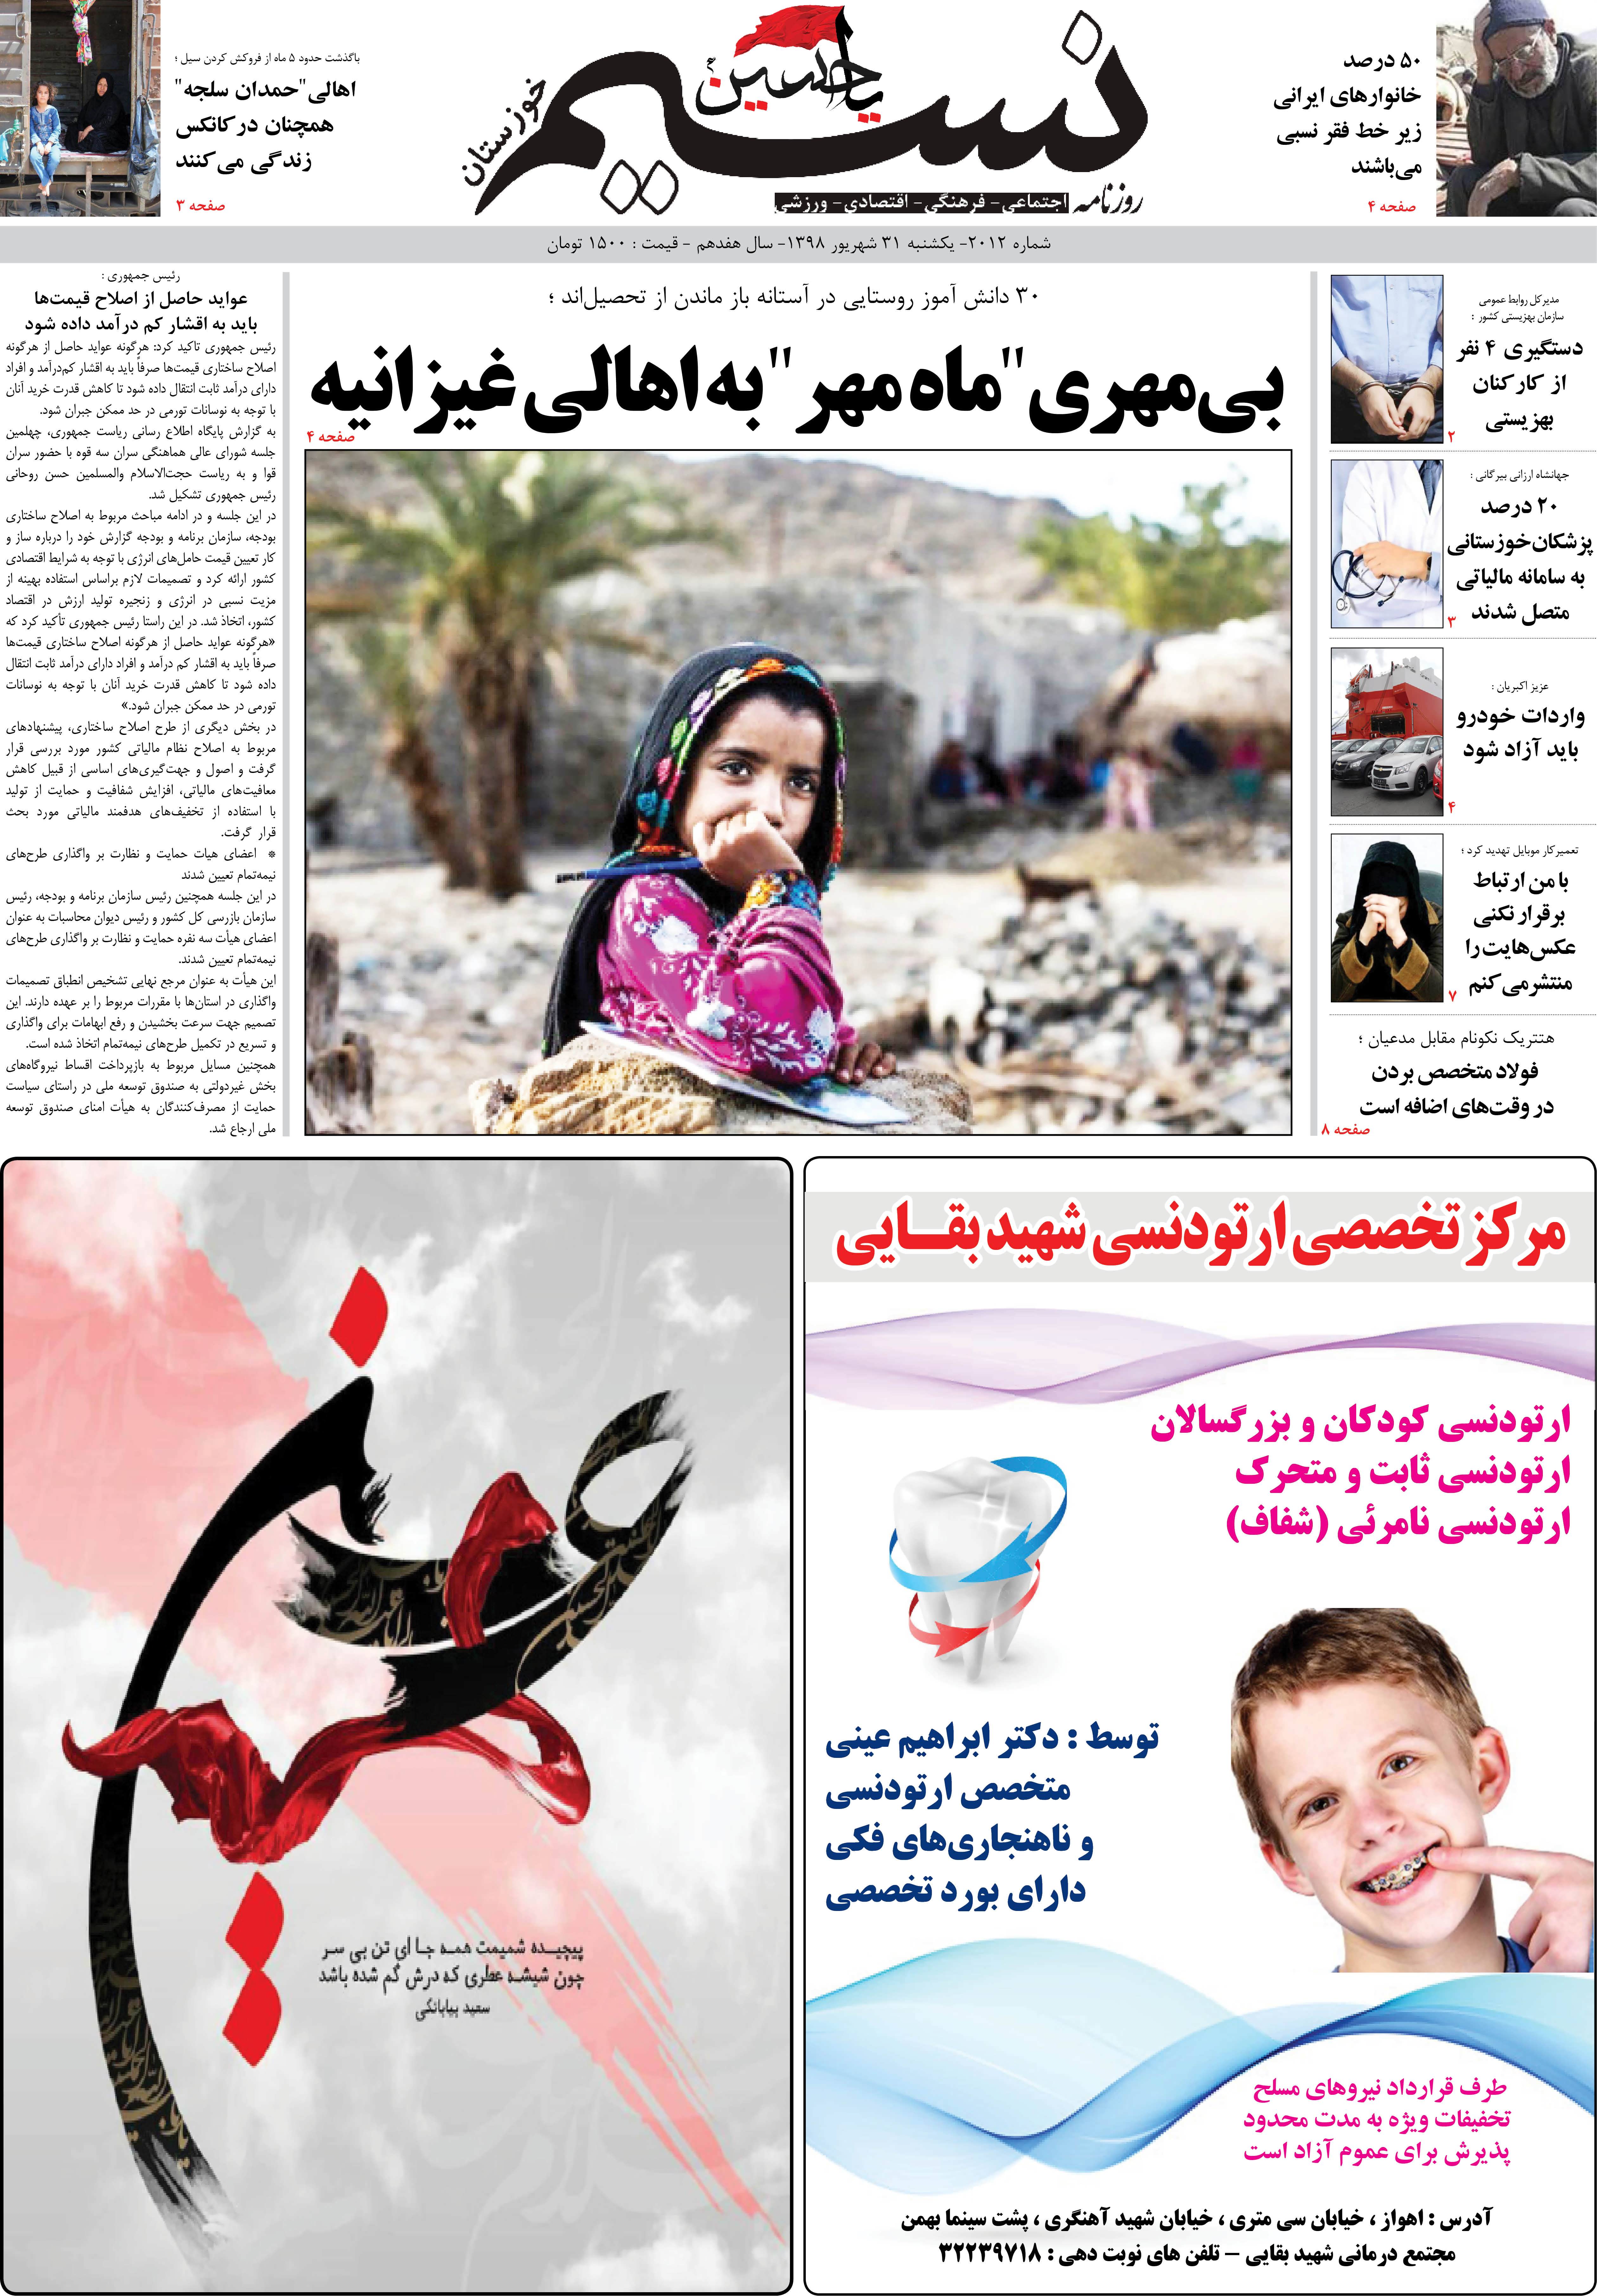 صفحه اصلی روزنامه نسیم شماره 2012 